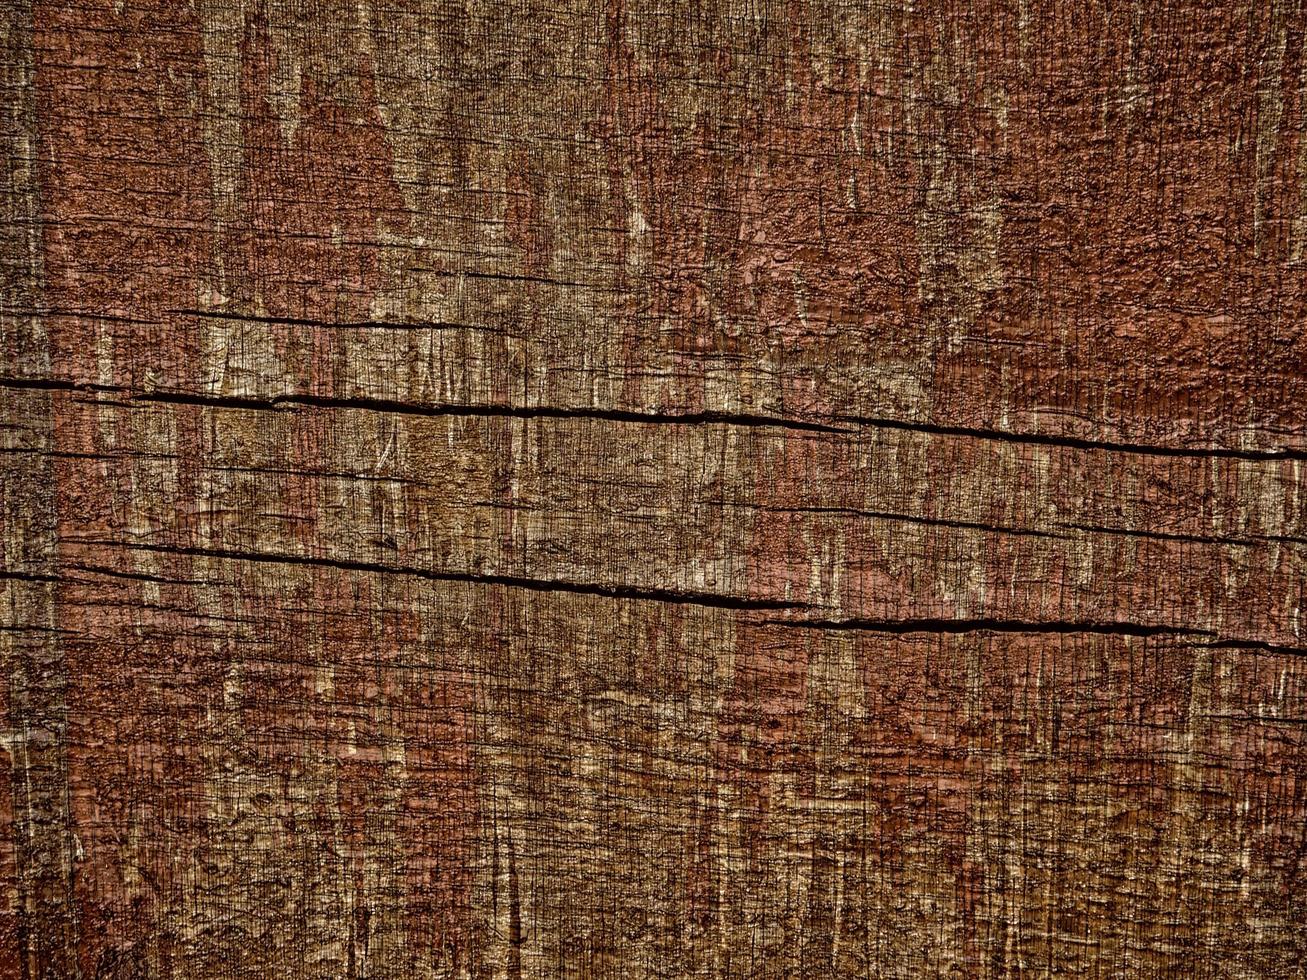 close-up van boomschors voor achtergrond of textuur foto